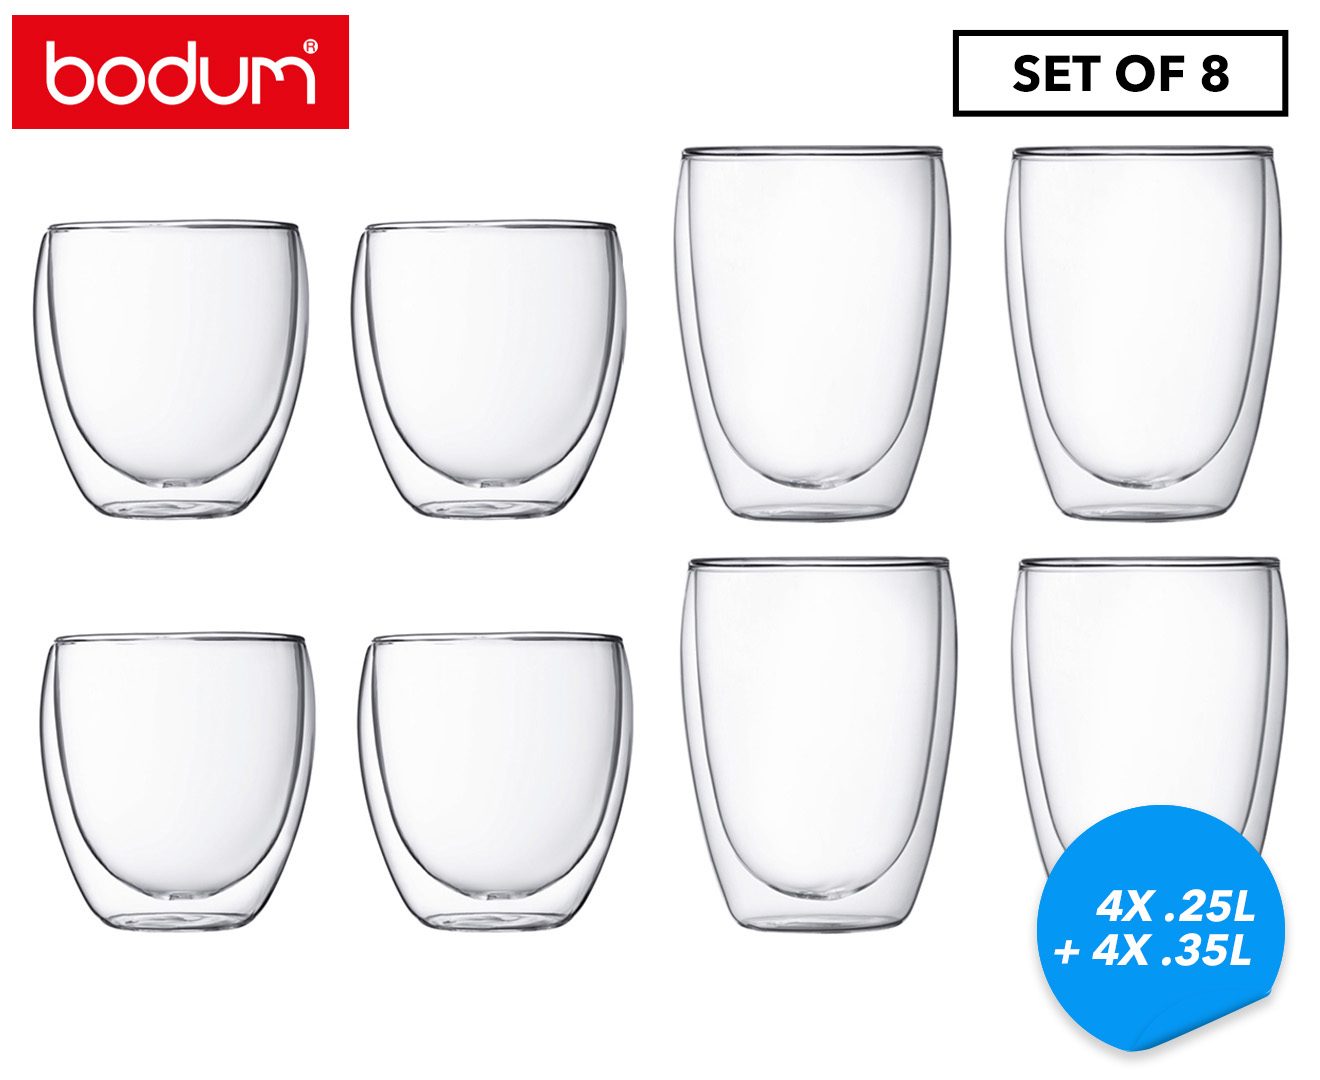 BODUM® - Double Wall Glasses PAVINA - 8 pieces set